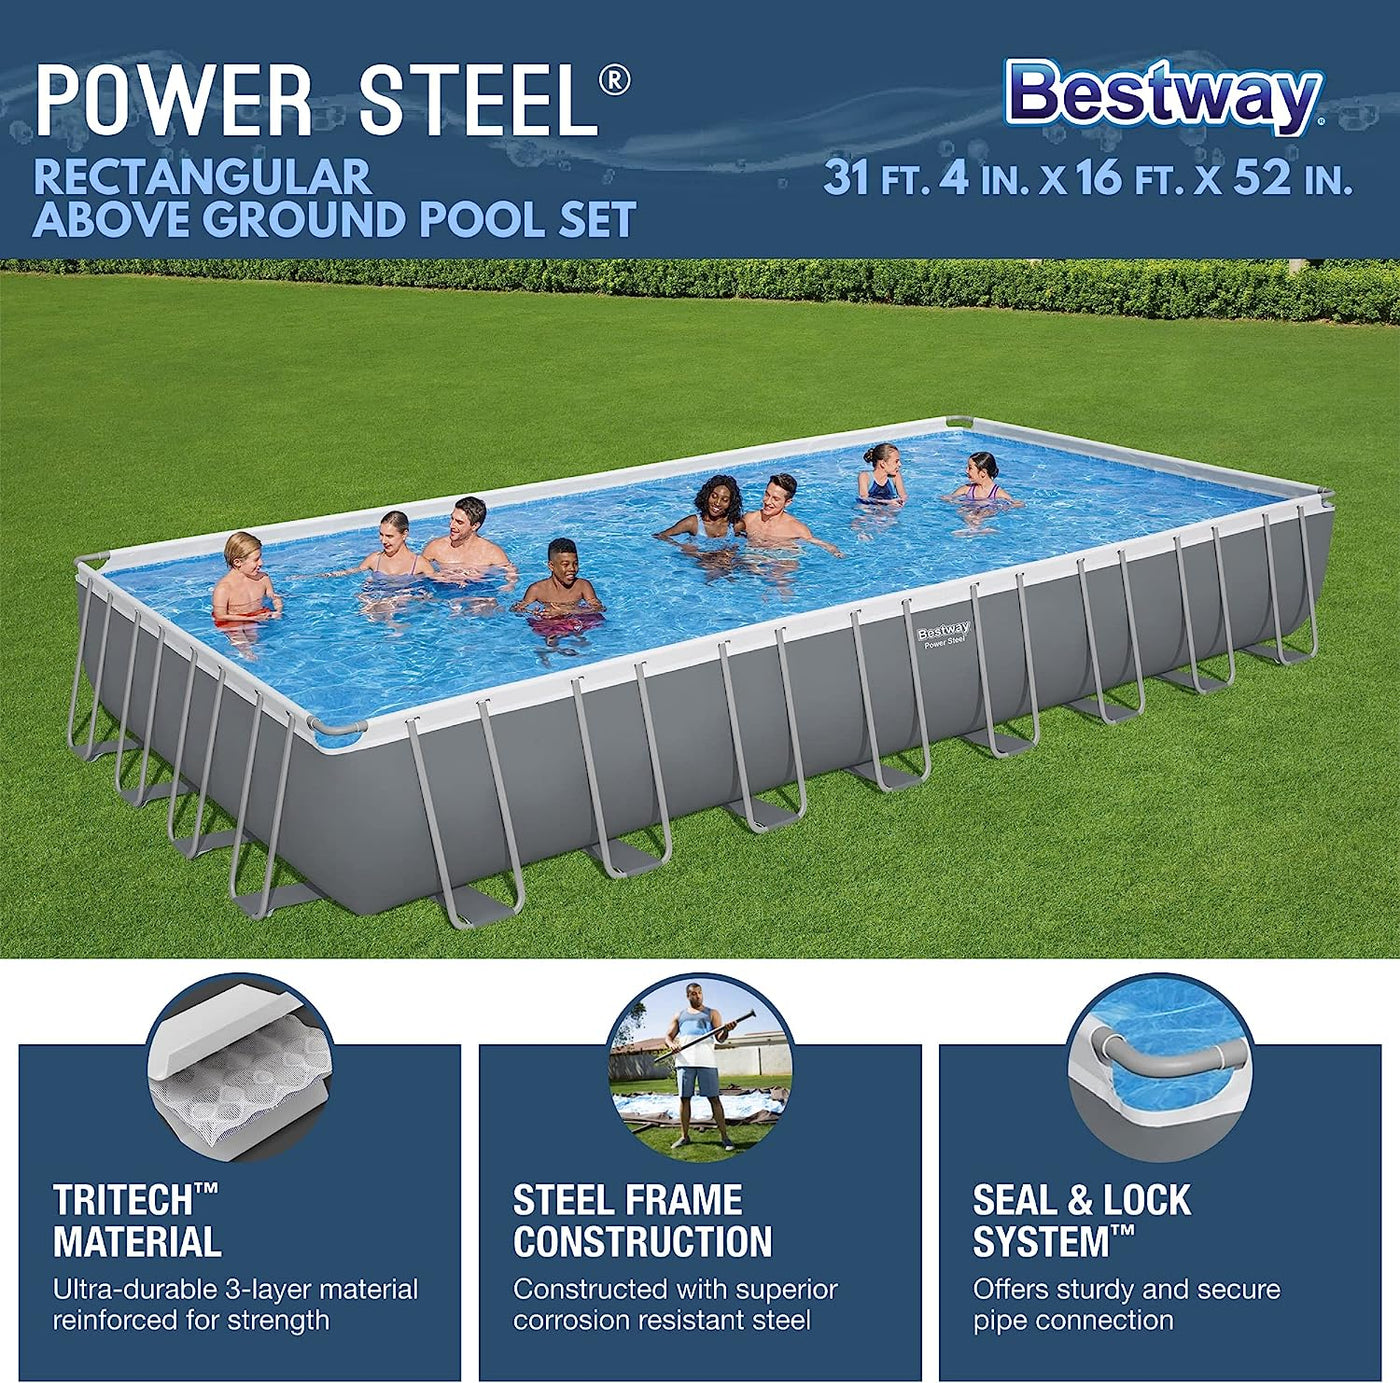 Bestway Power Steel 31' 4" x 16' x 52" Metal Frame Above Ground Pool - $835